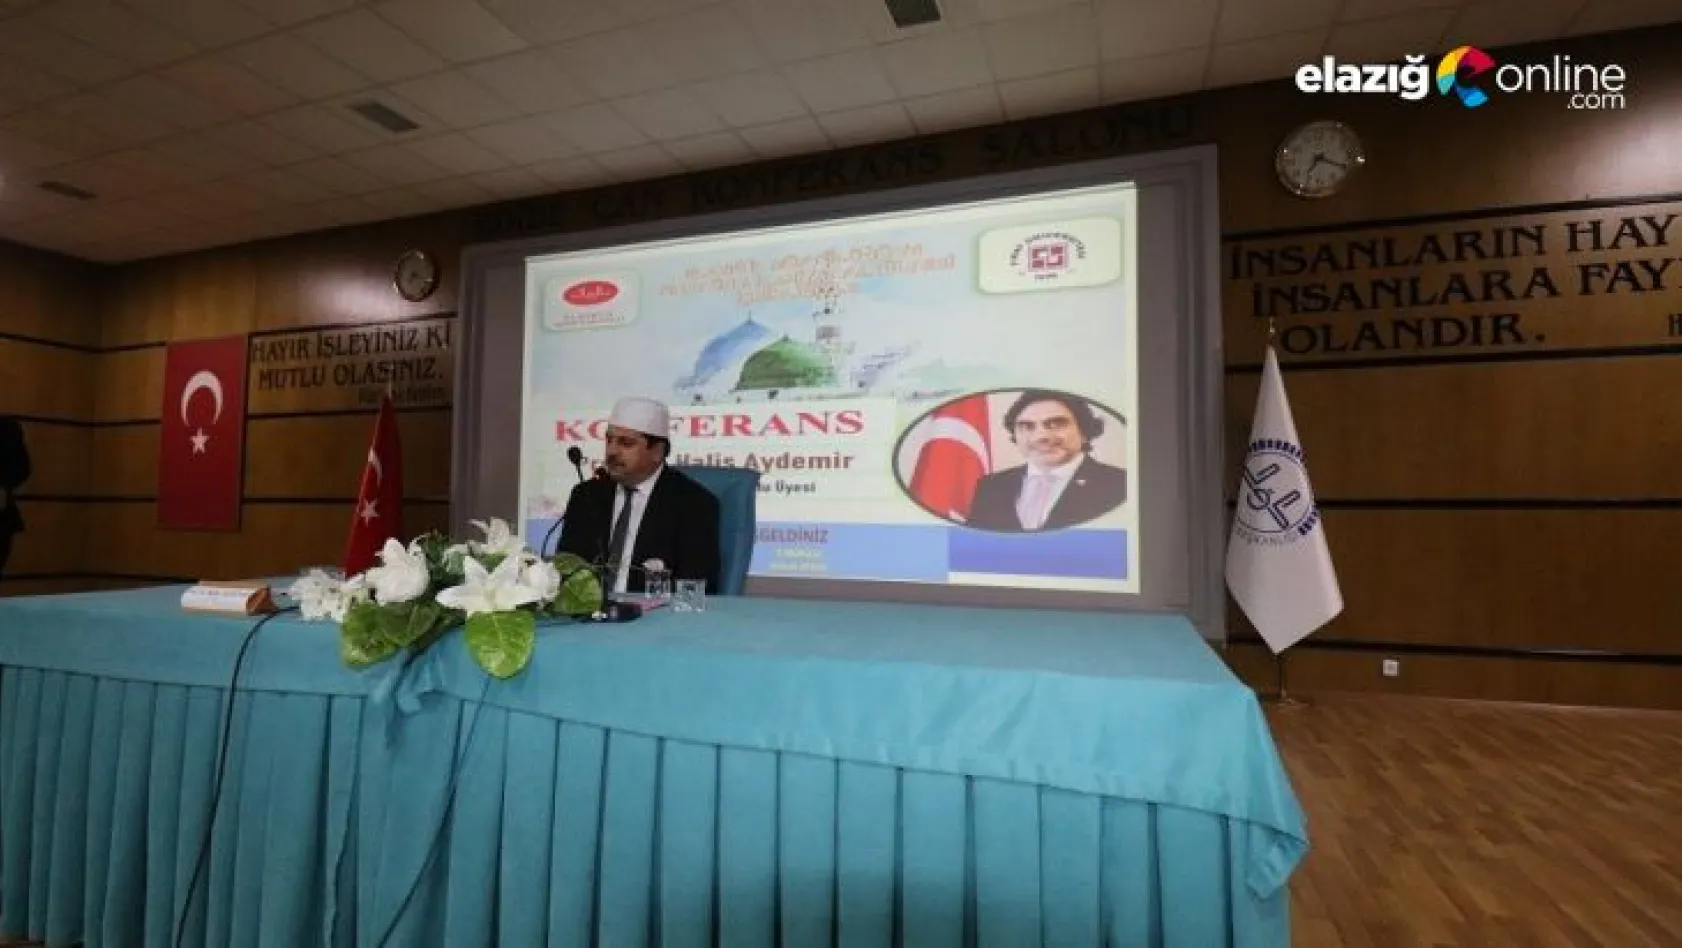 Elazığ'da 'Nebevi Davet' konulu konferans gerçekleştirildi